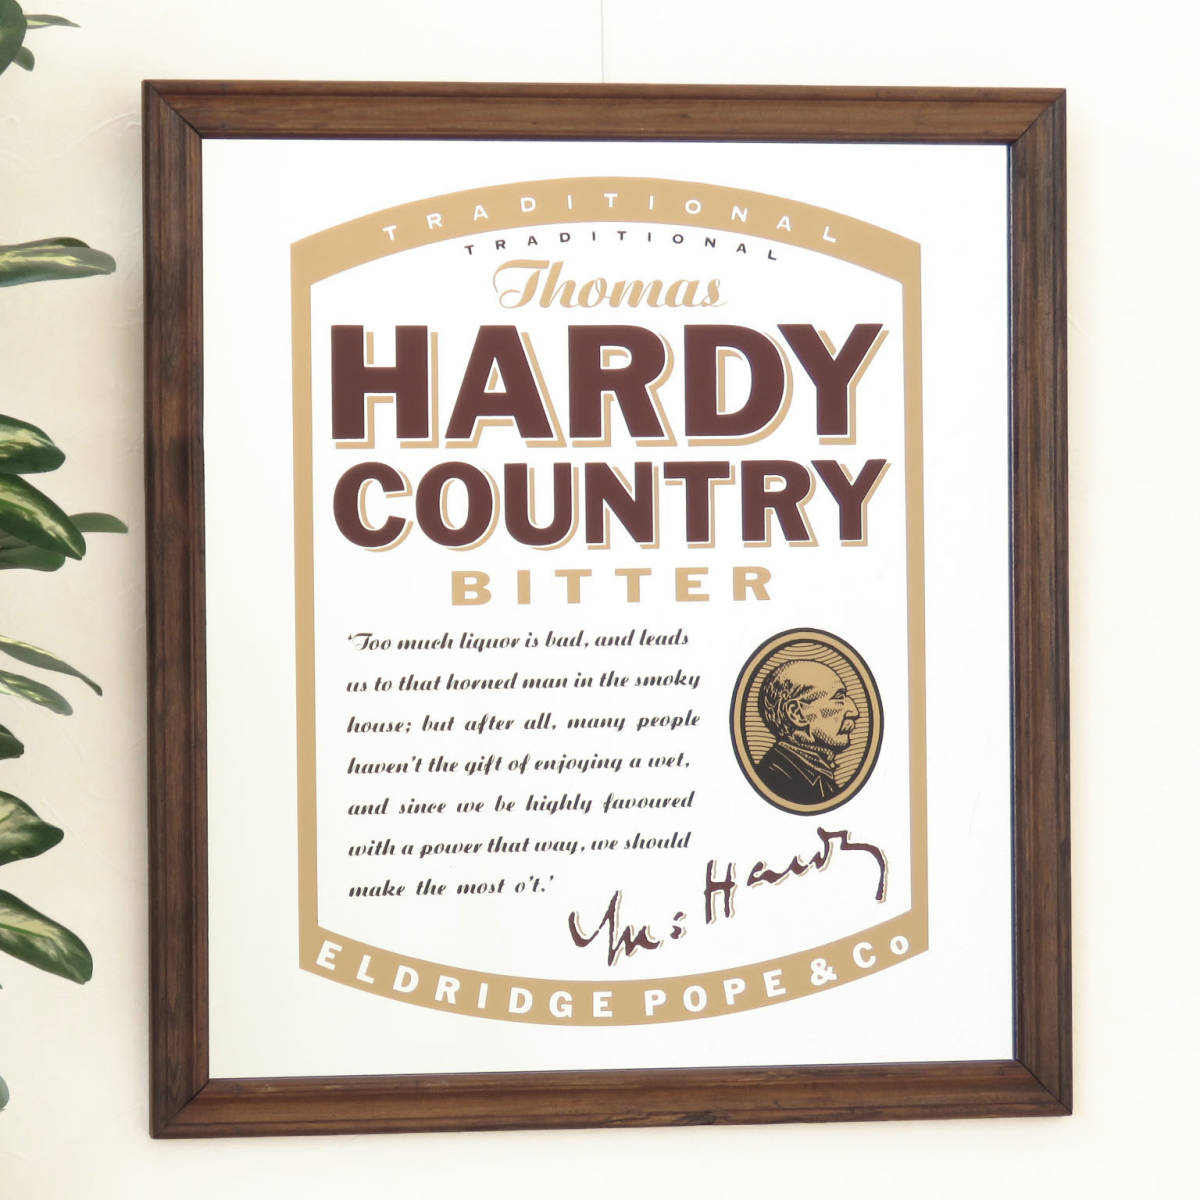 ビンテージパブミラー/トーマス ハーディ カントリー ビター(Thomas HARDY COUNTRY BITTER) イギリスのビール/壁掛け鏡/店舗什器/A-4508-15_画像1